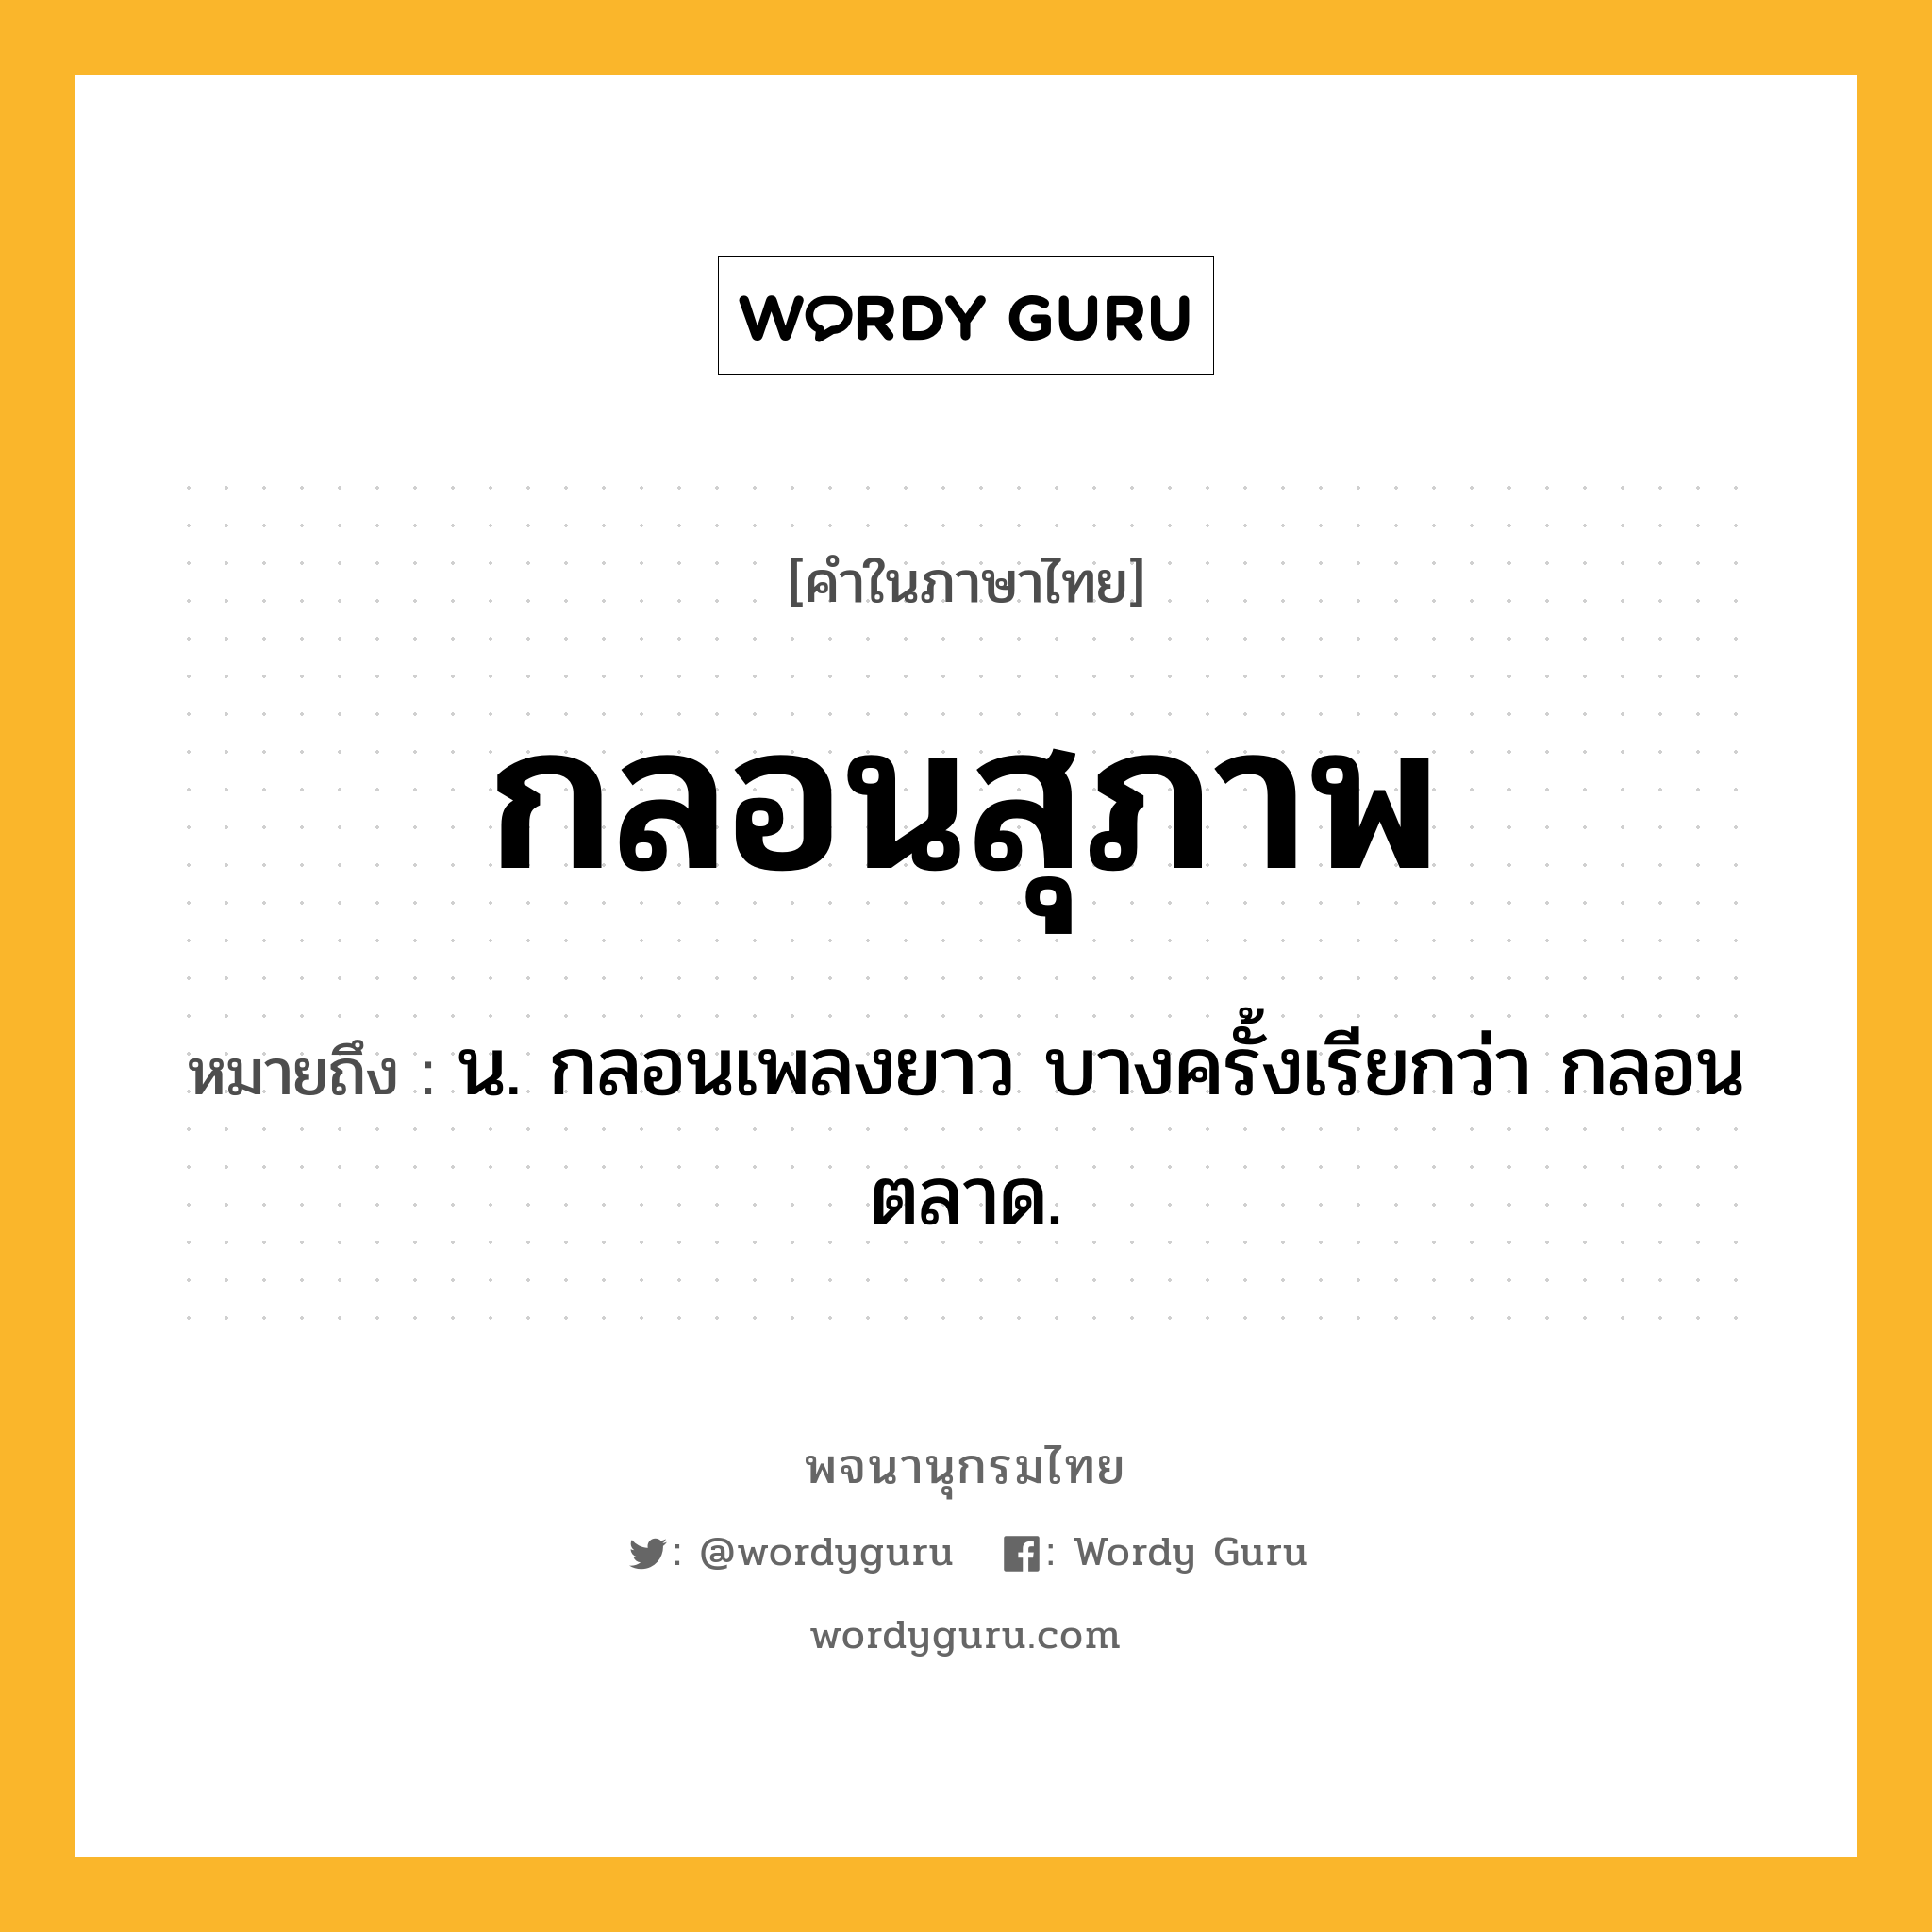 กลอนสุภาพ หมายถึงอะไร?, คำในภาษาไทย กลอนสุภาพ หมายถึง น. กลอนเพลงยาว บางครั้งเรียกว่า กลอนตลาด.